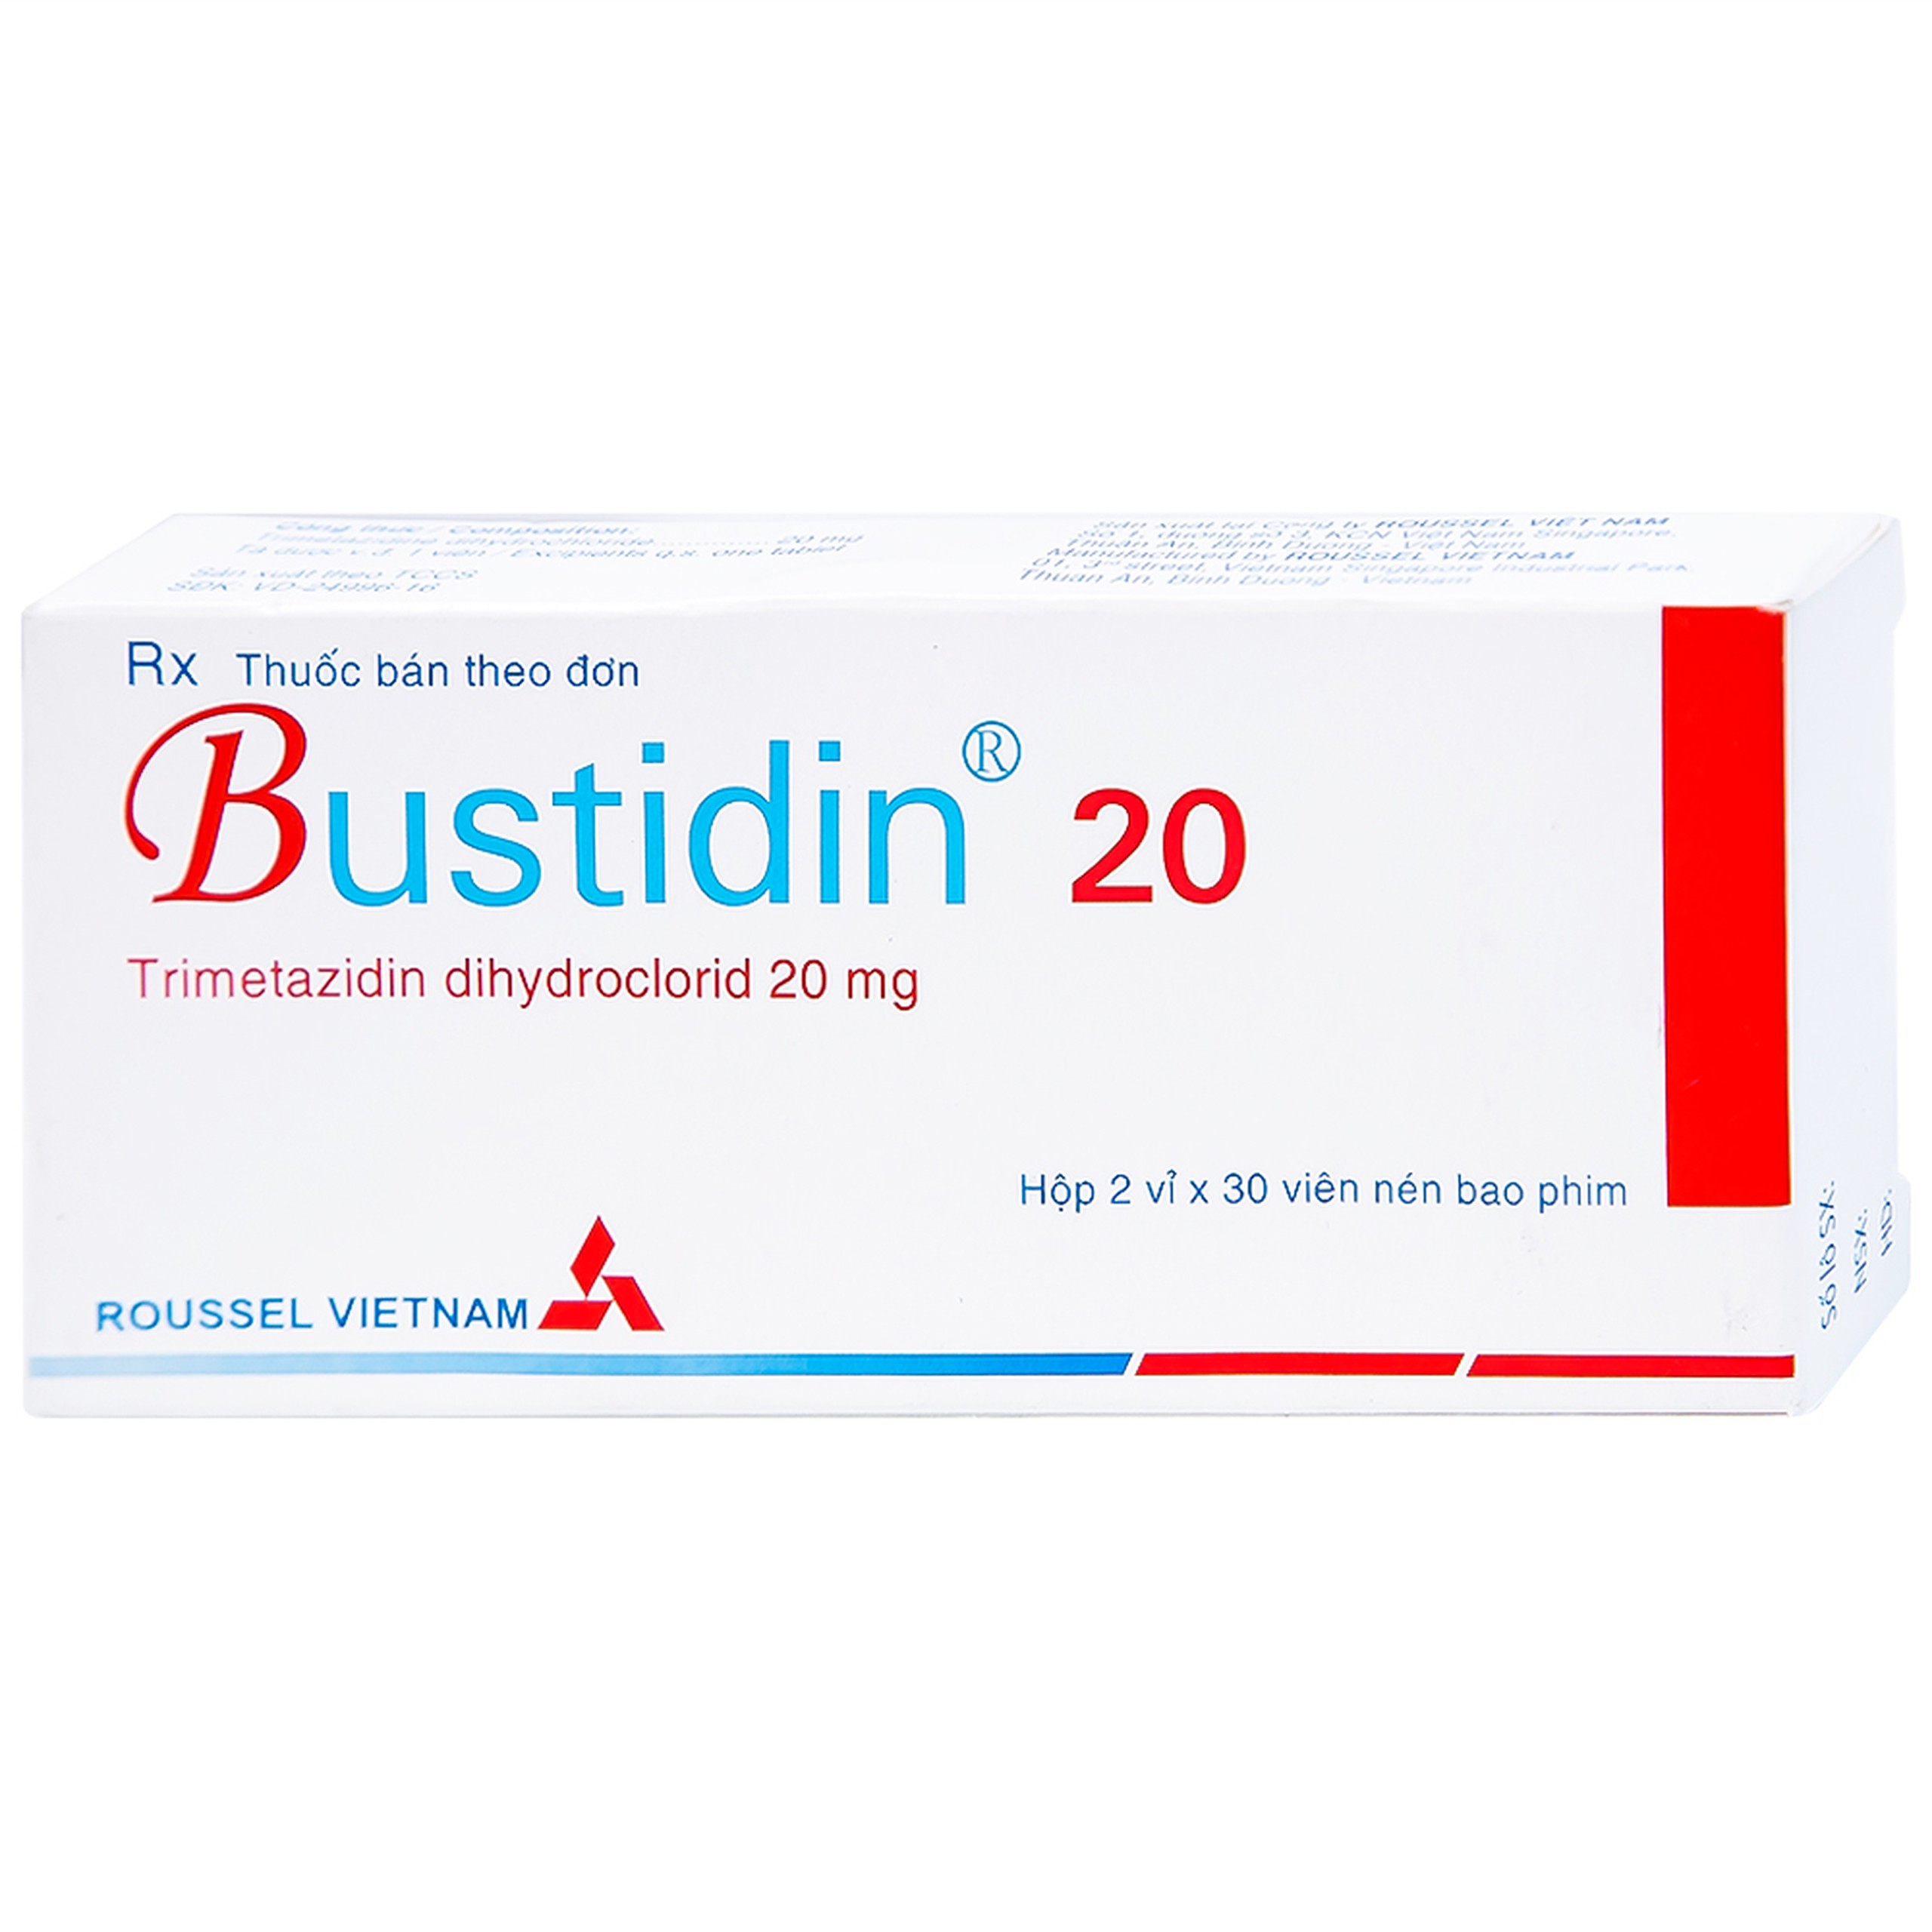 Thuốc Bustidin 20 Roussel điều trị đau thắt ngực ổn định (2 vỉ x 30 viên)